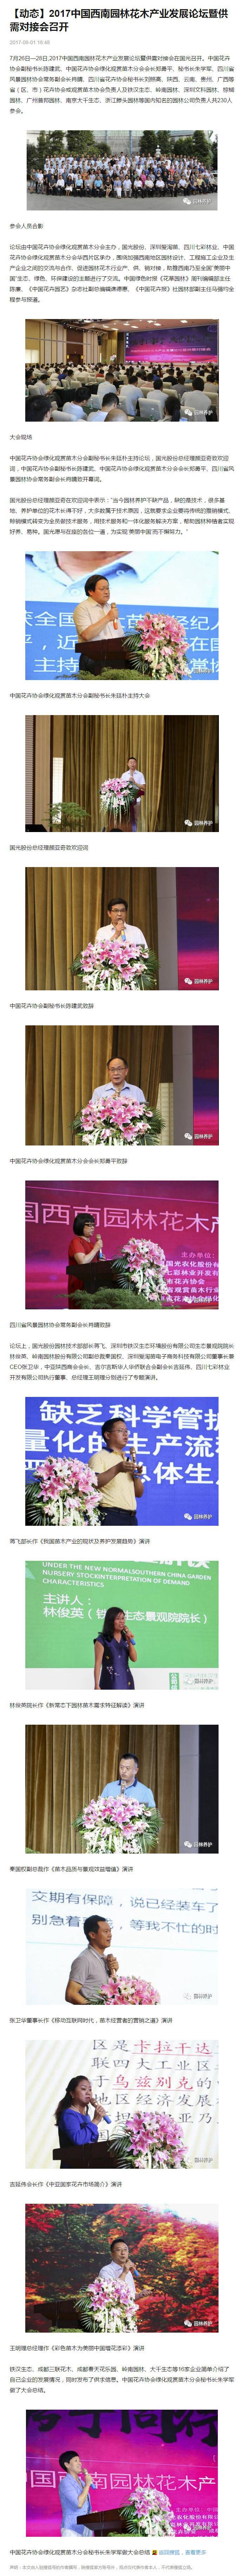 2017 年中国西南园林花木产业发展论坛暨供需会对接会召开